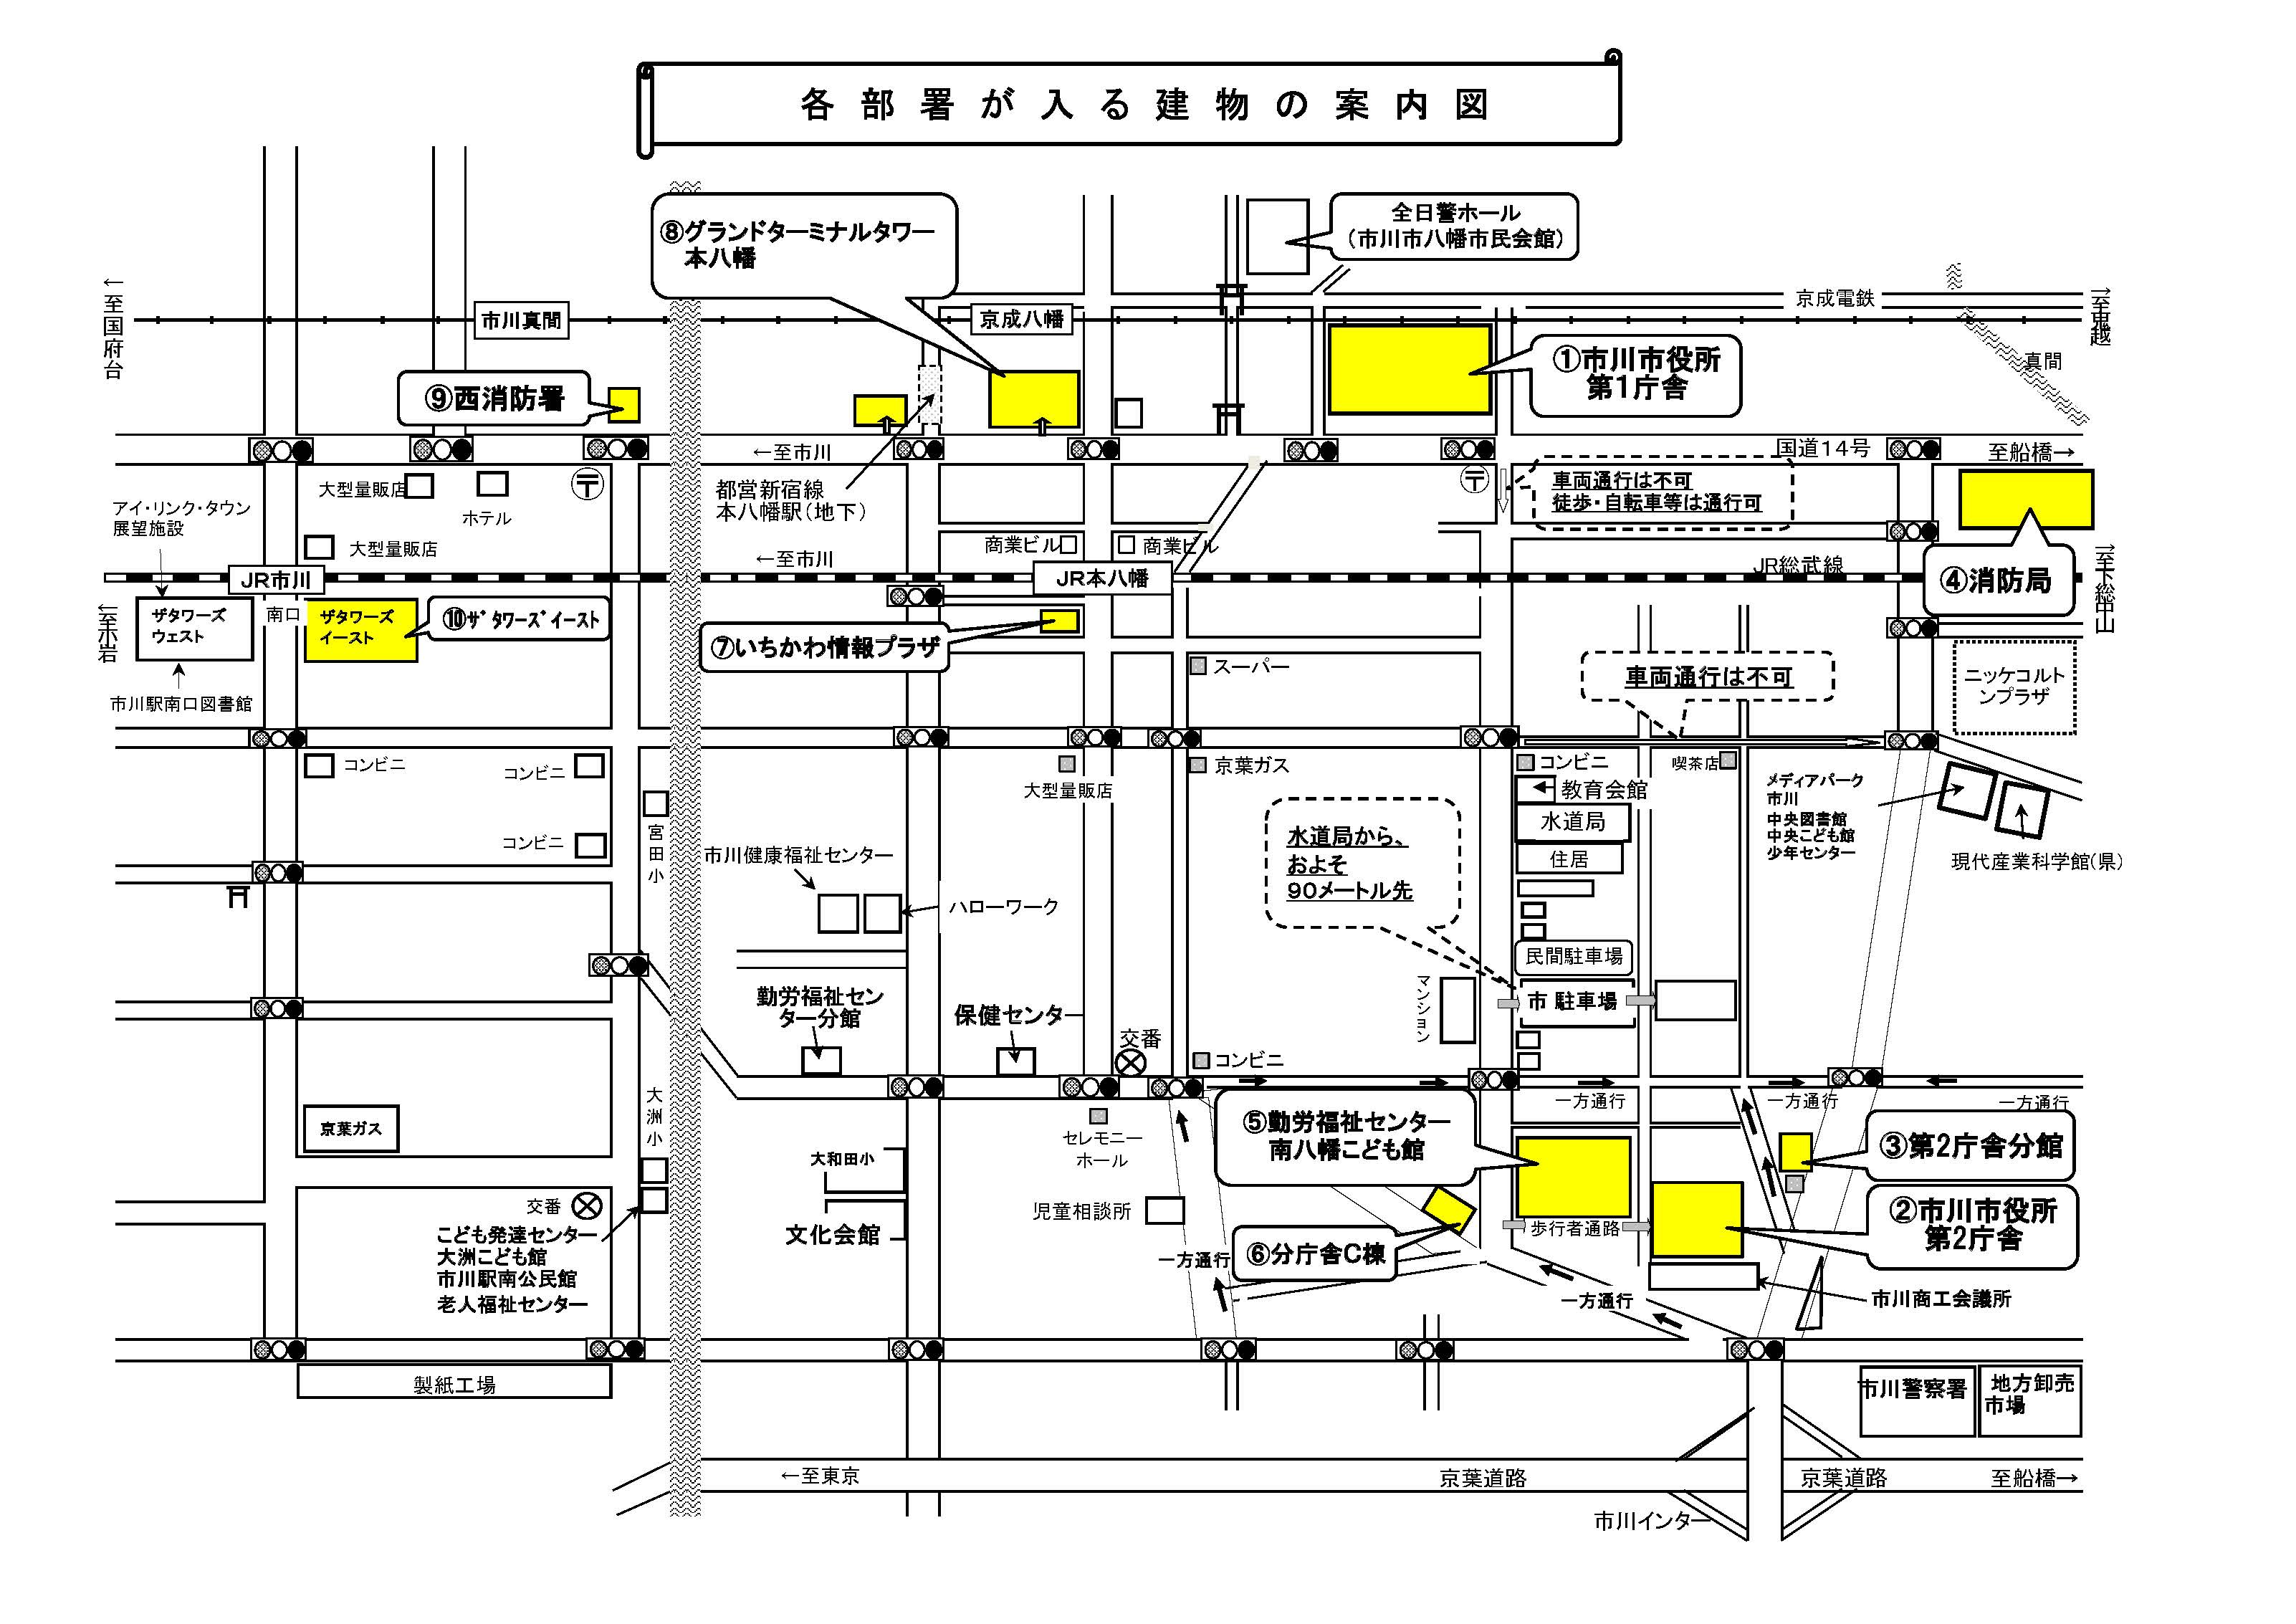 各部署が入る建物の案内図です。移転前、移転後それぞれの施設の案内図が表示されています。